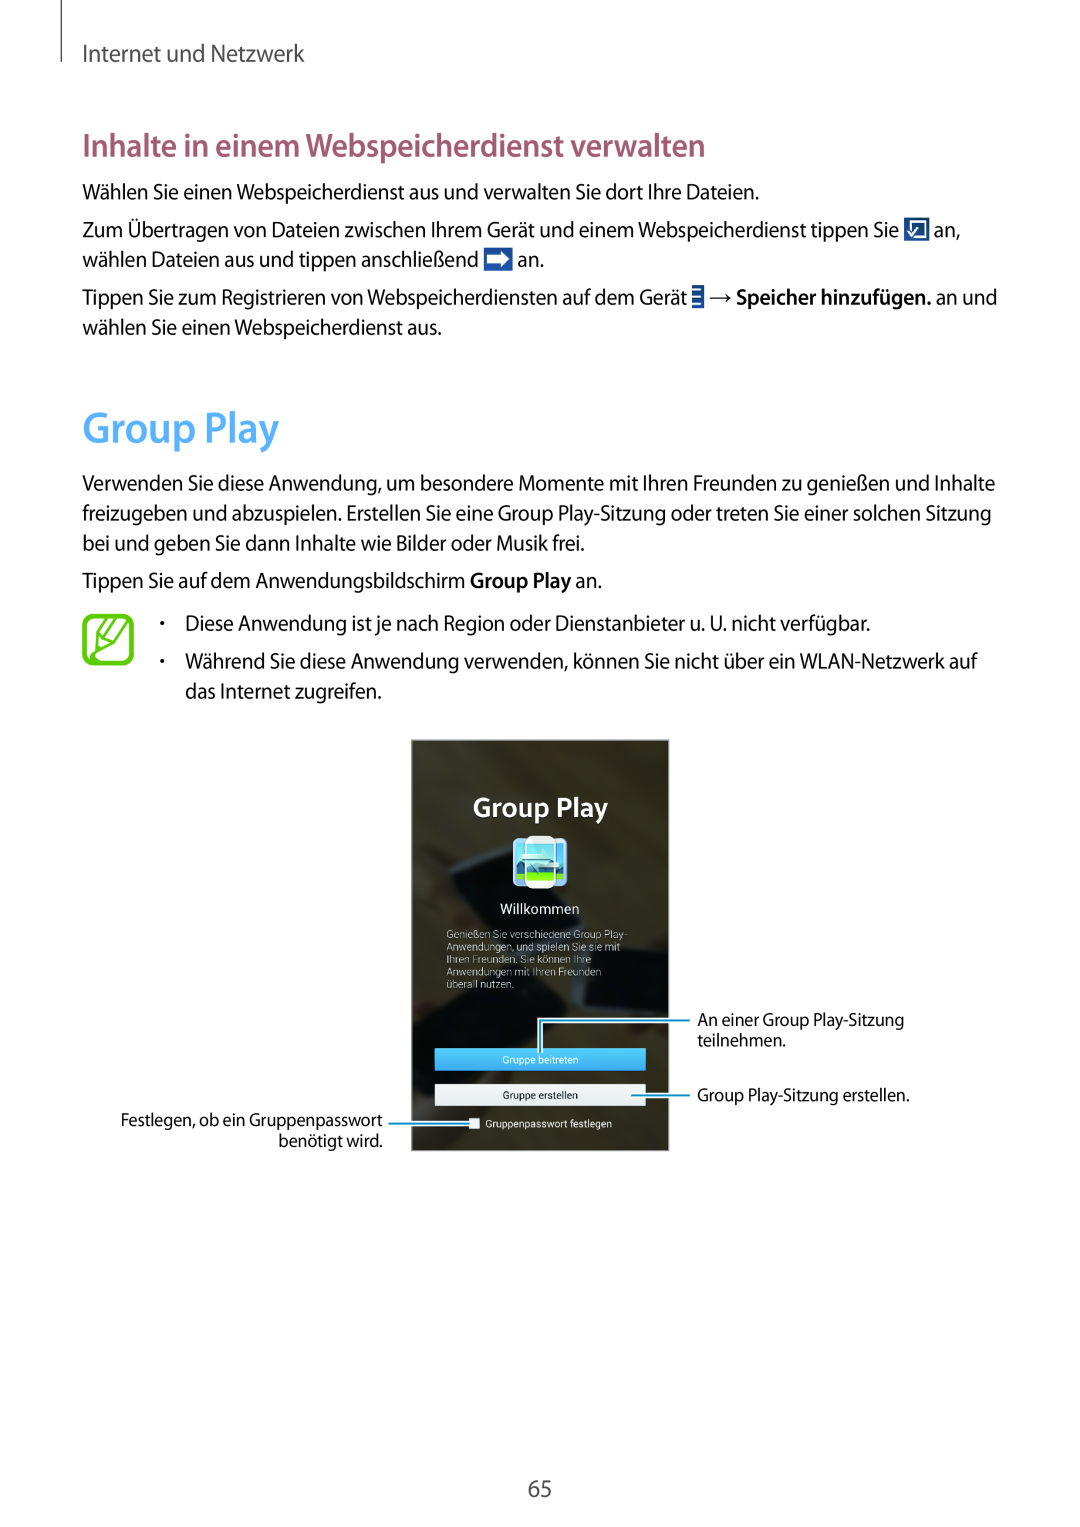 Samsung SM-T3150ZWAVD2, SM-T3150ZWADBT Group Play, Inhalte in einem Webspeicherdienst verwalten, Internet und Netzwerk 